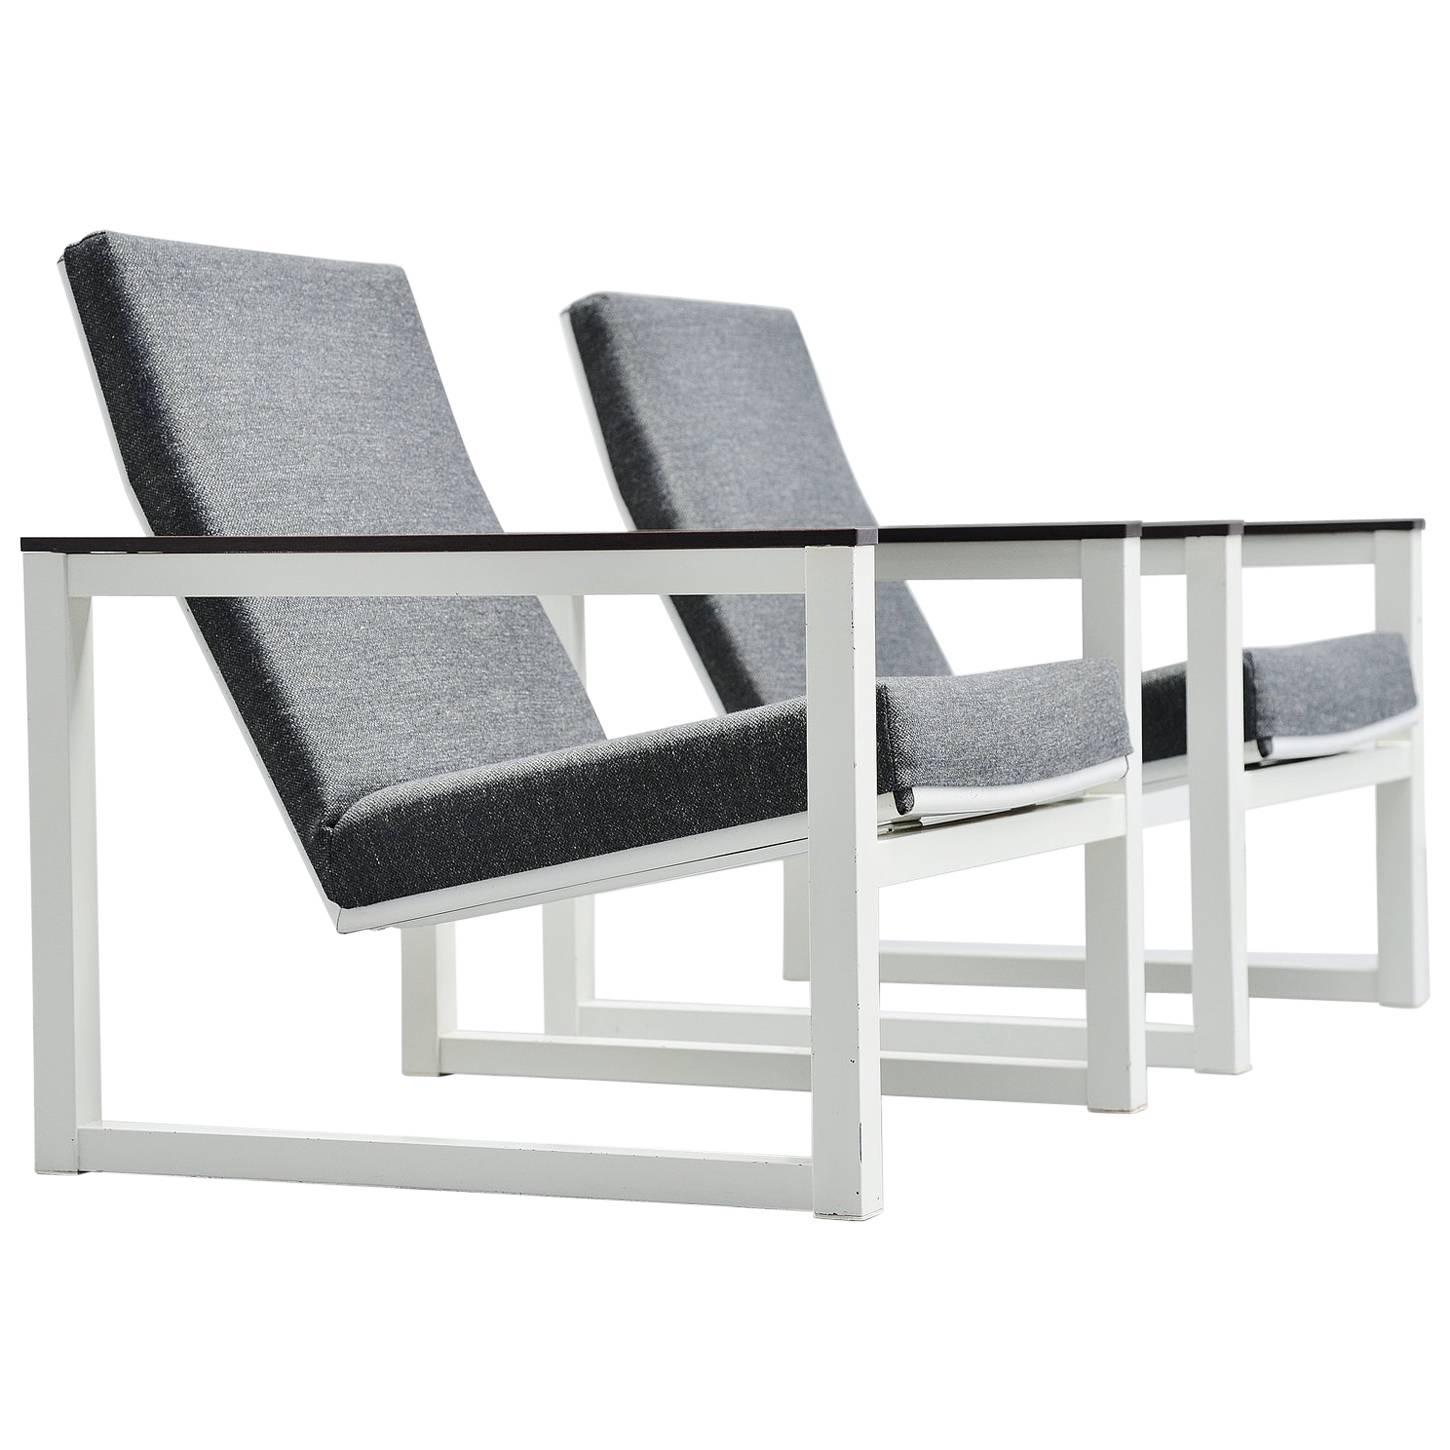 Friso Kramer & Tjerk Reijenga Lounge Chairs Pilastro, 1965